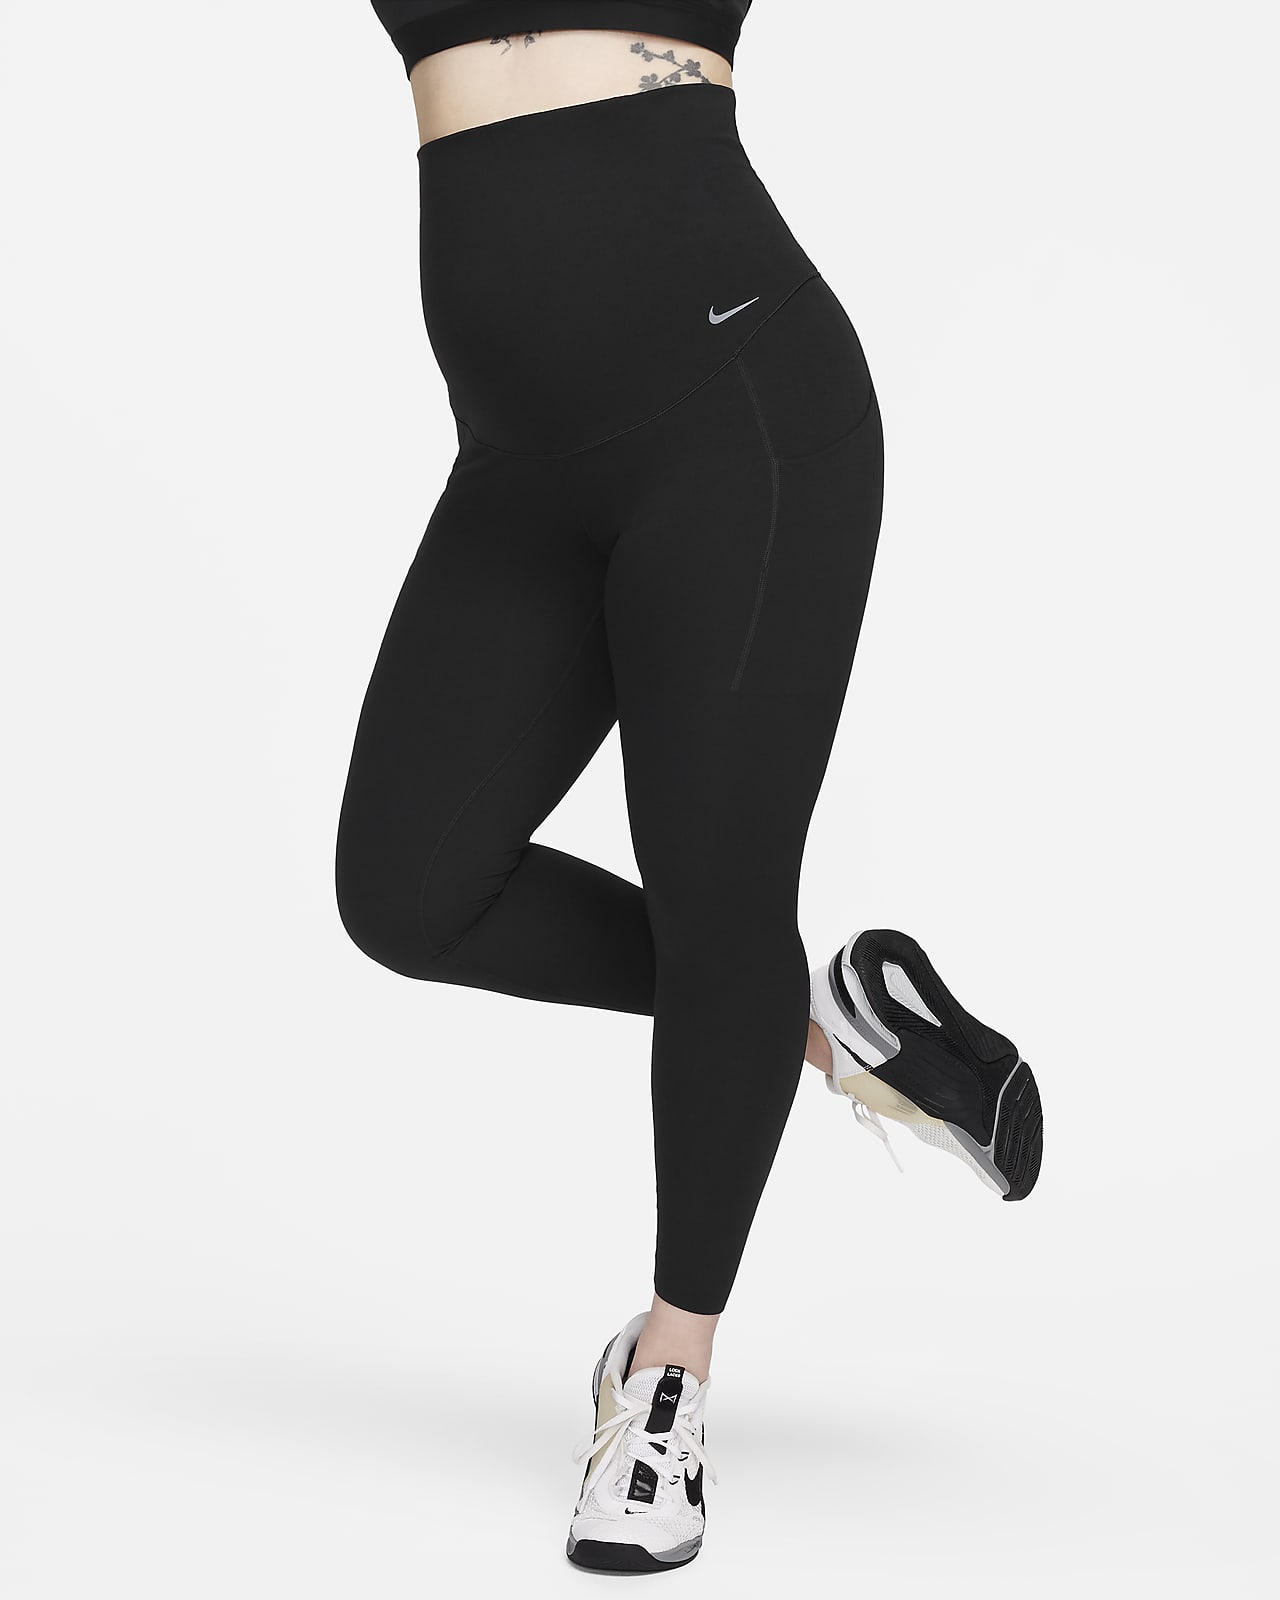 Tight Zenvy Tights & Leggings. Nike CA